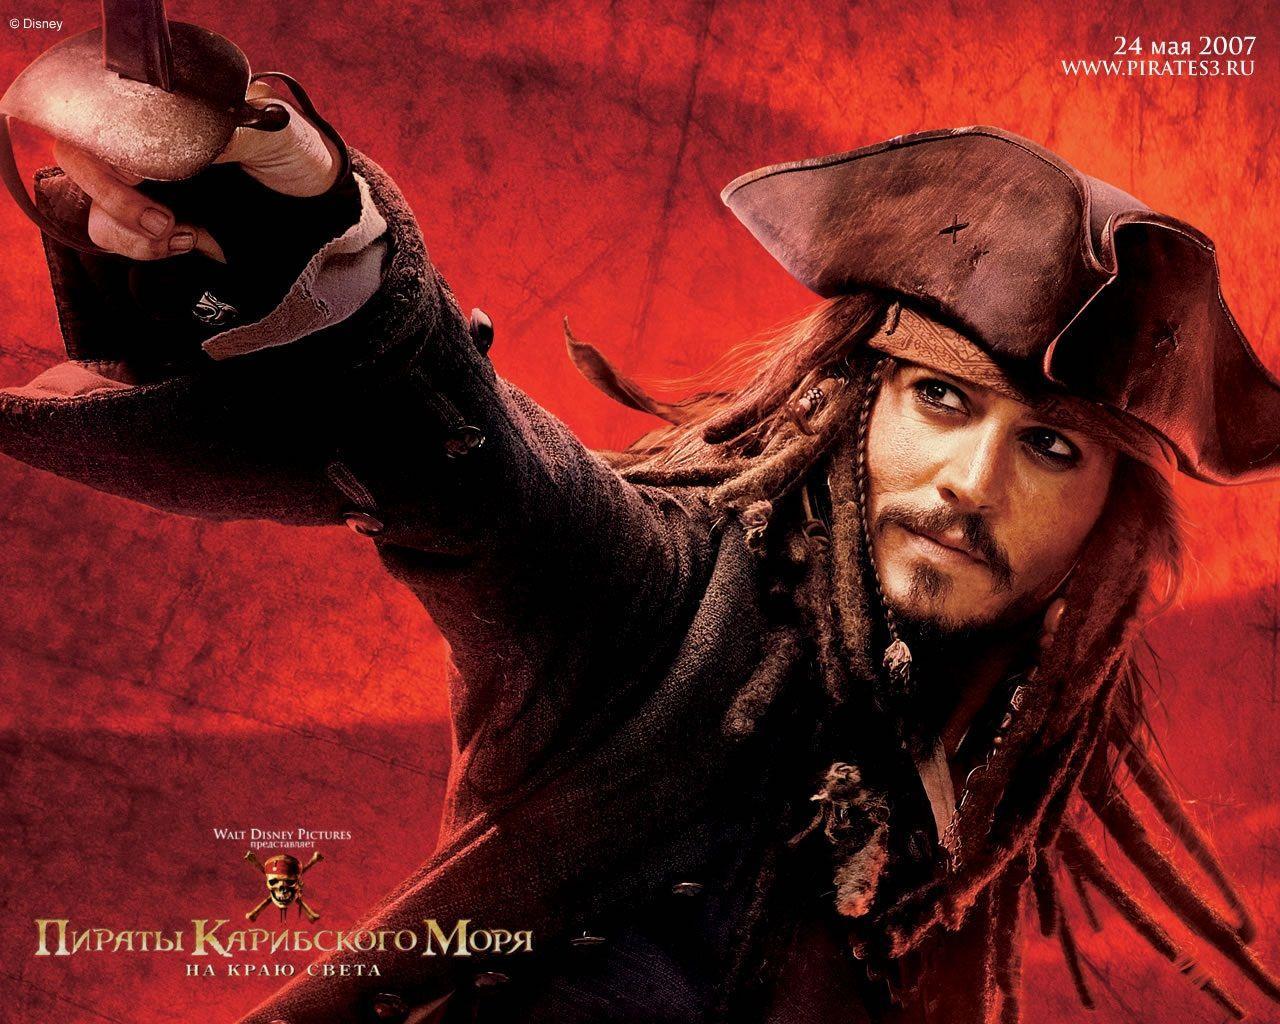 Jack Sparrow Wallpaper Jack Sparrow Wallpaper. Captain